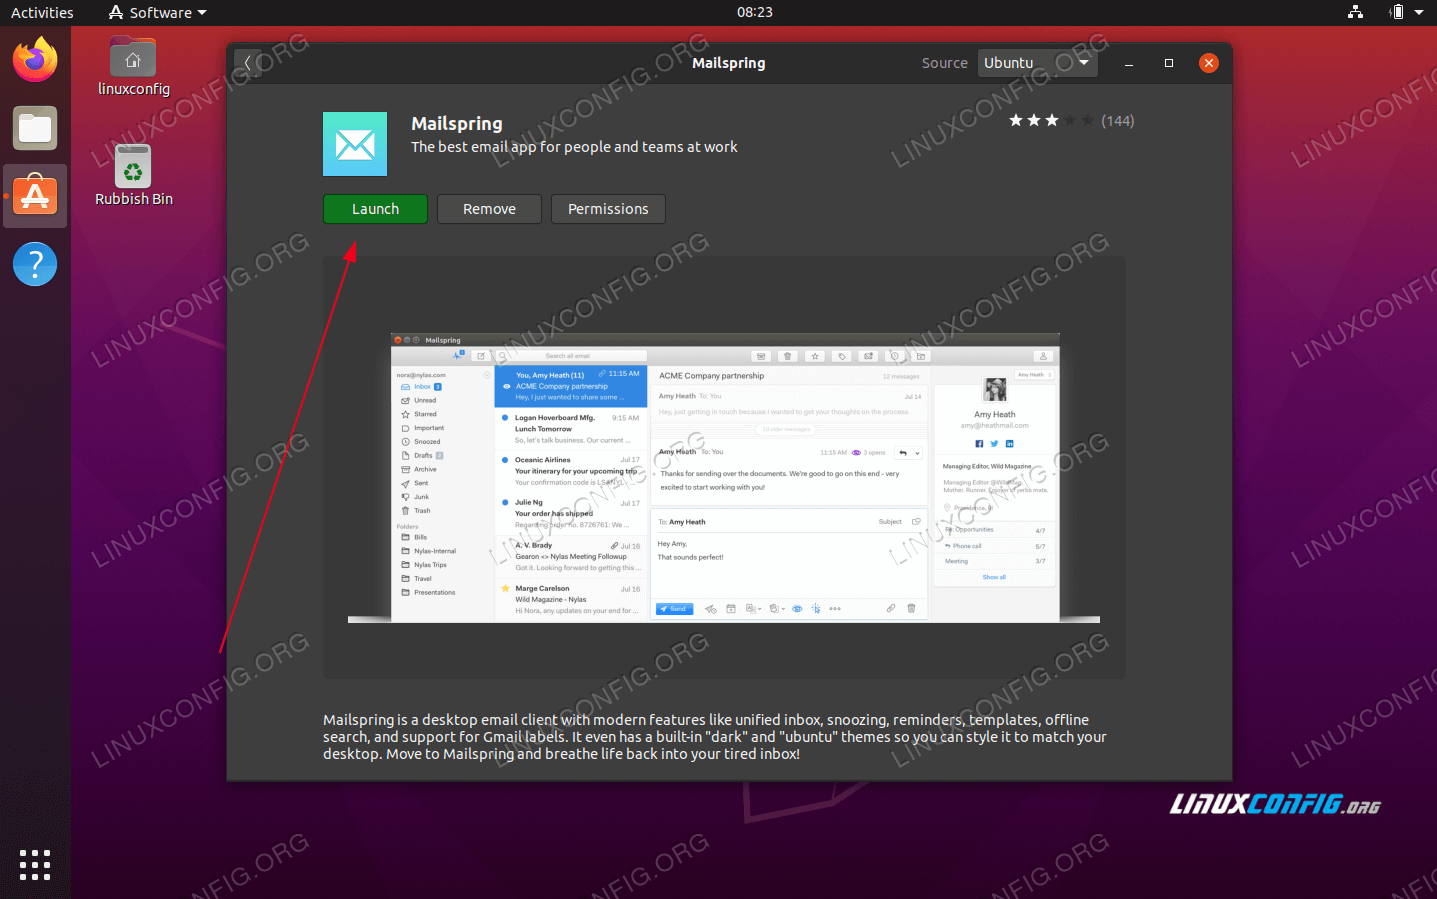 How to install laravel on ubuntu 20.04?